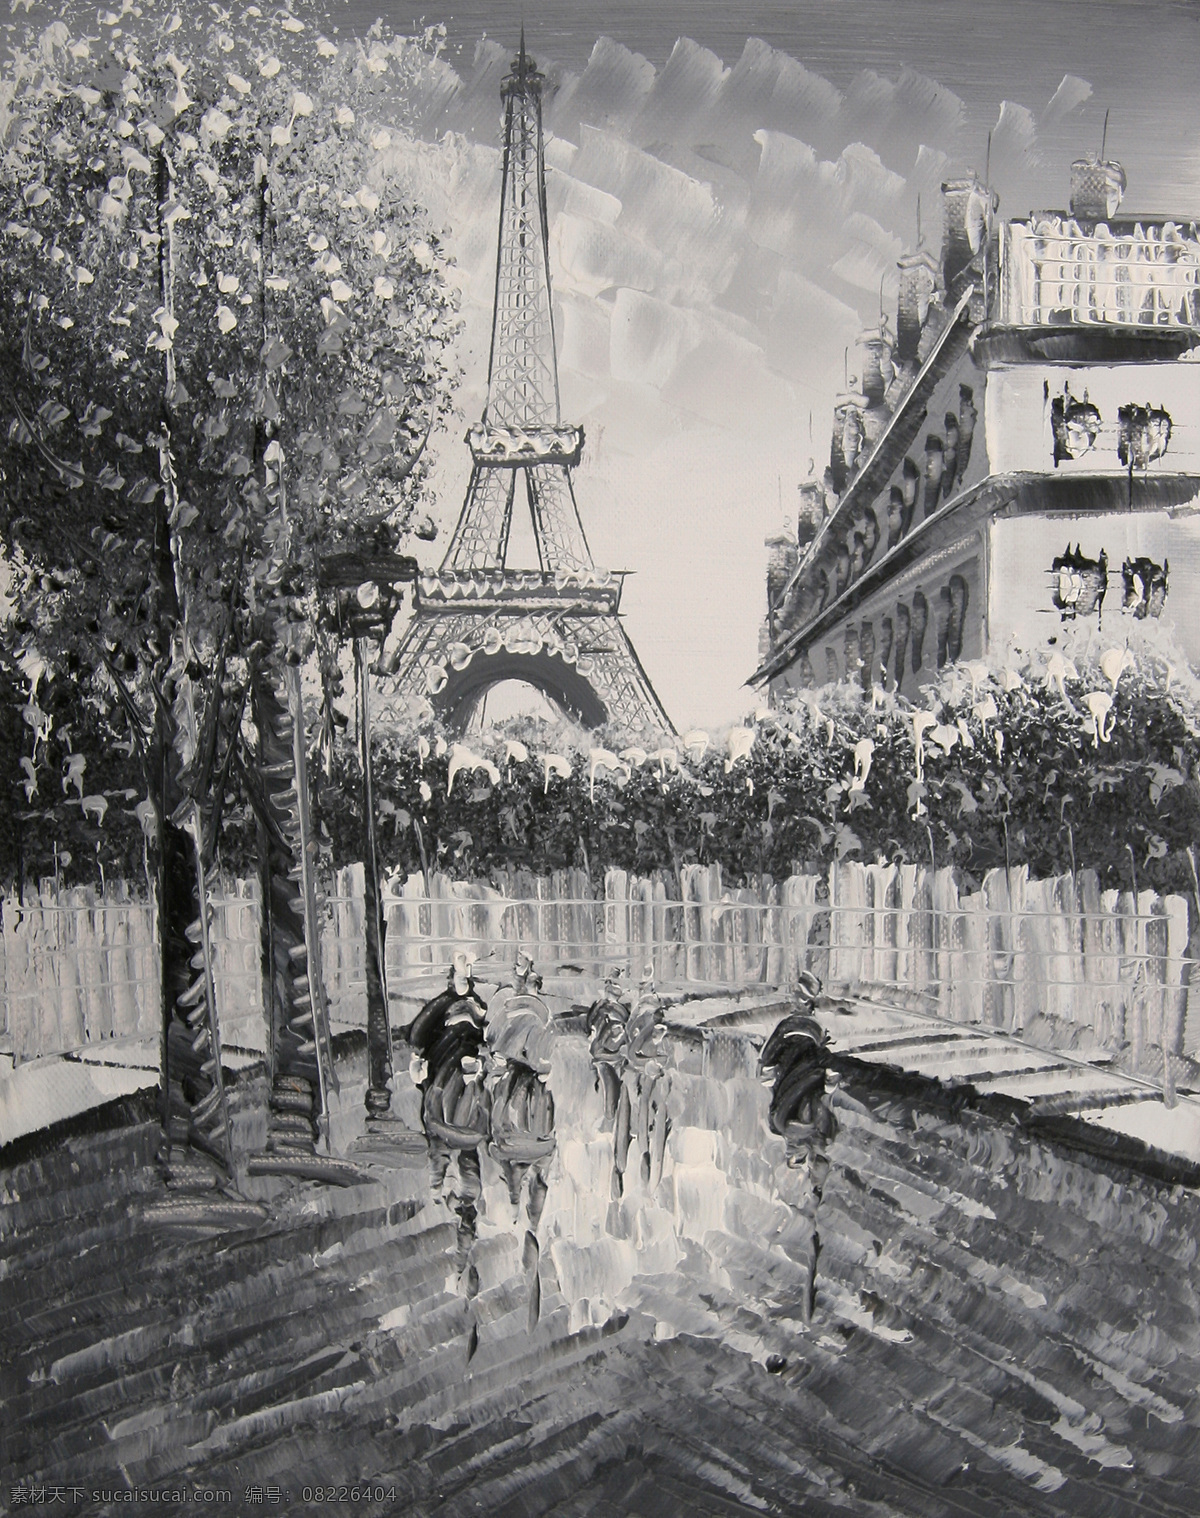 黑白 绘画书法 时尚装饰 手绘油画 文化艺术 装饰画 巴黎 街景 油画 设计素材 模板下载 巴黎街景油画 巴黎街景